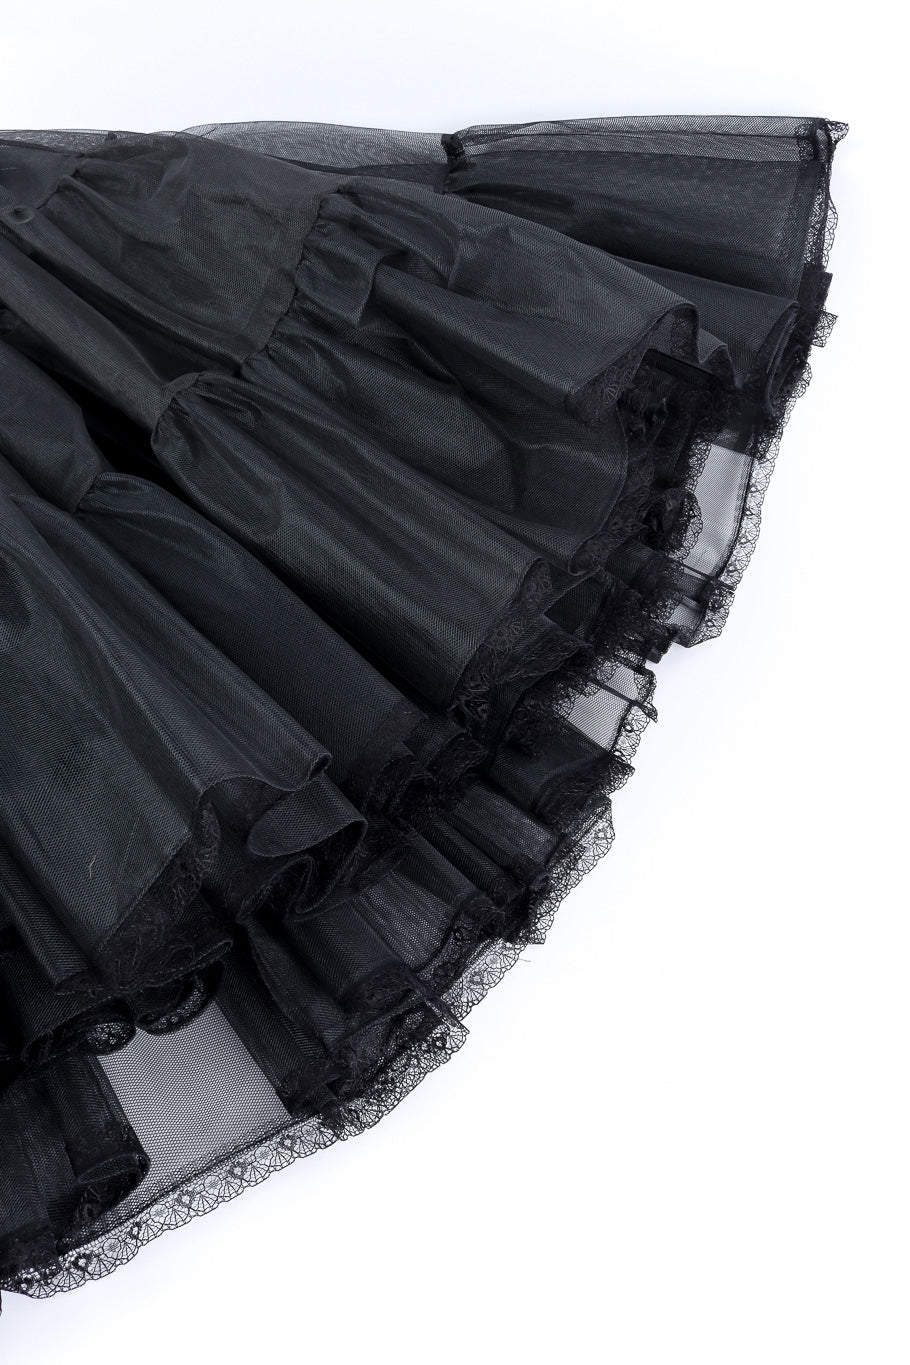 Petticoat skirt by Morgane Le Fay hem @recessla